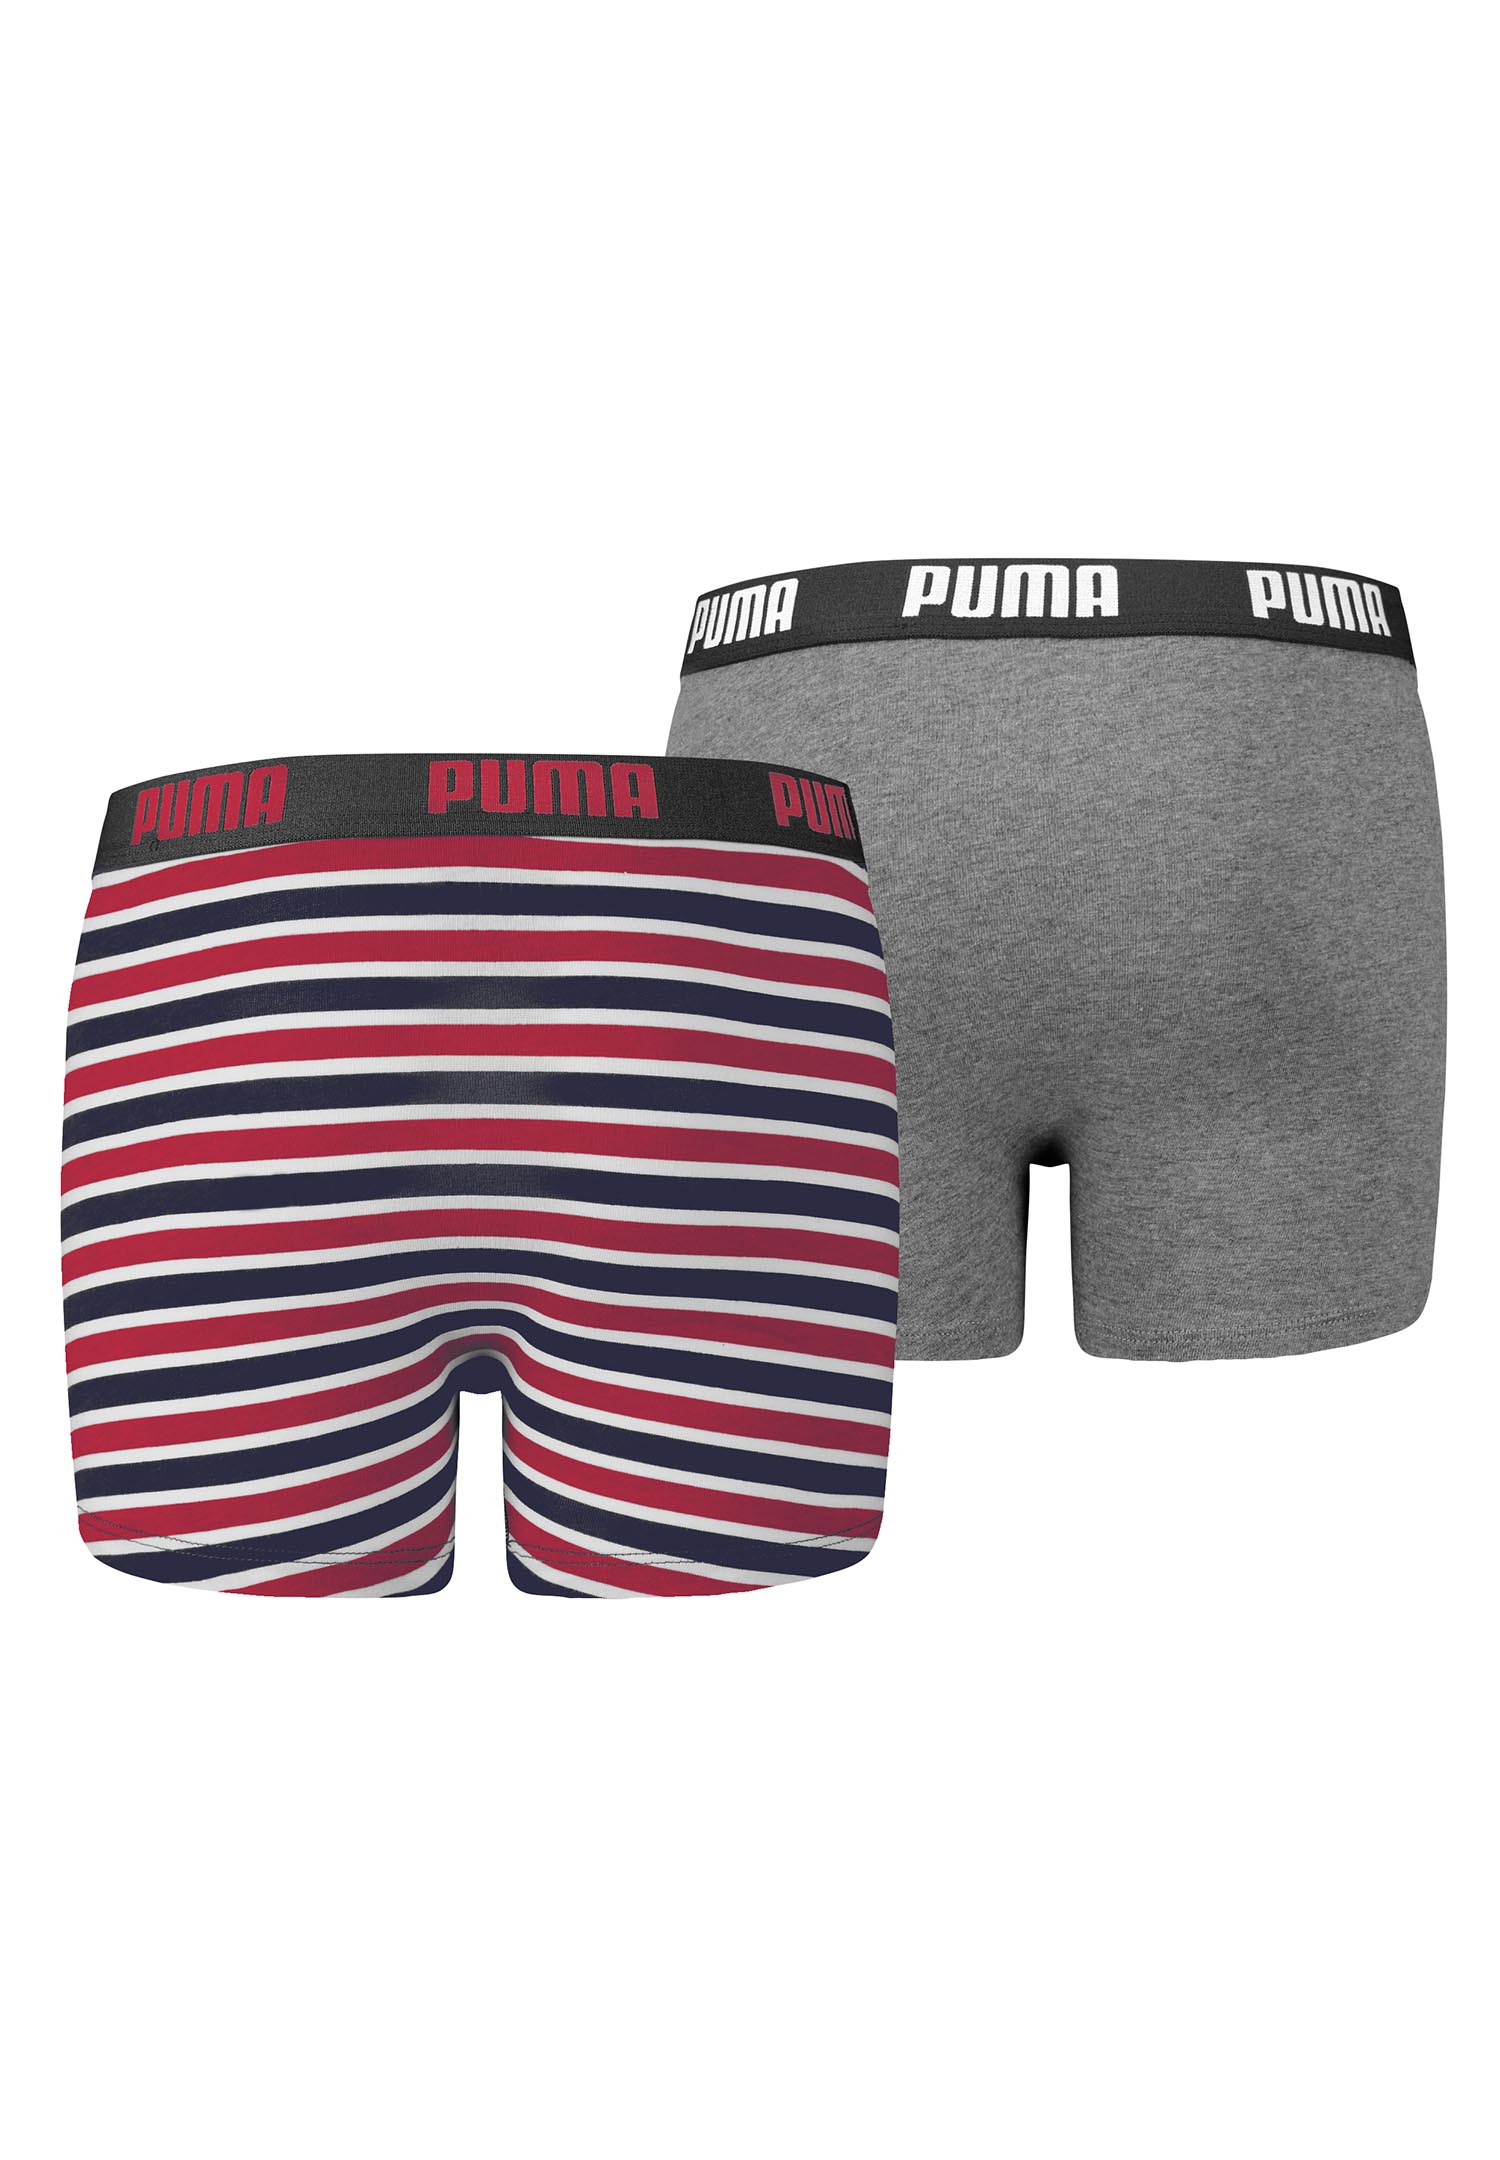 Puma Basic Boxer Printed Stripes Boxershorts Jungen Kinder Unterhose 2 er Pack 